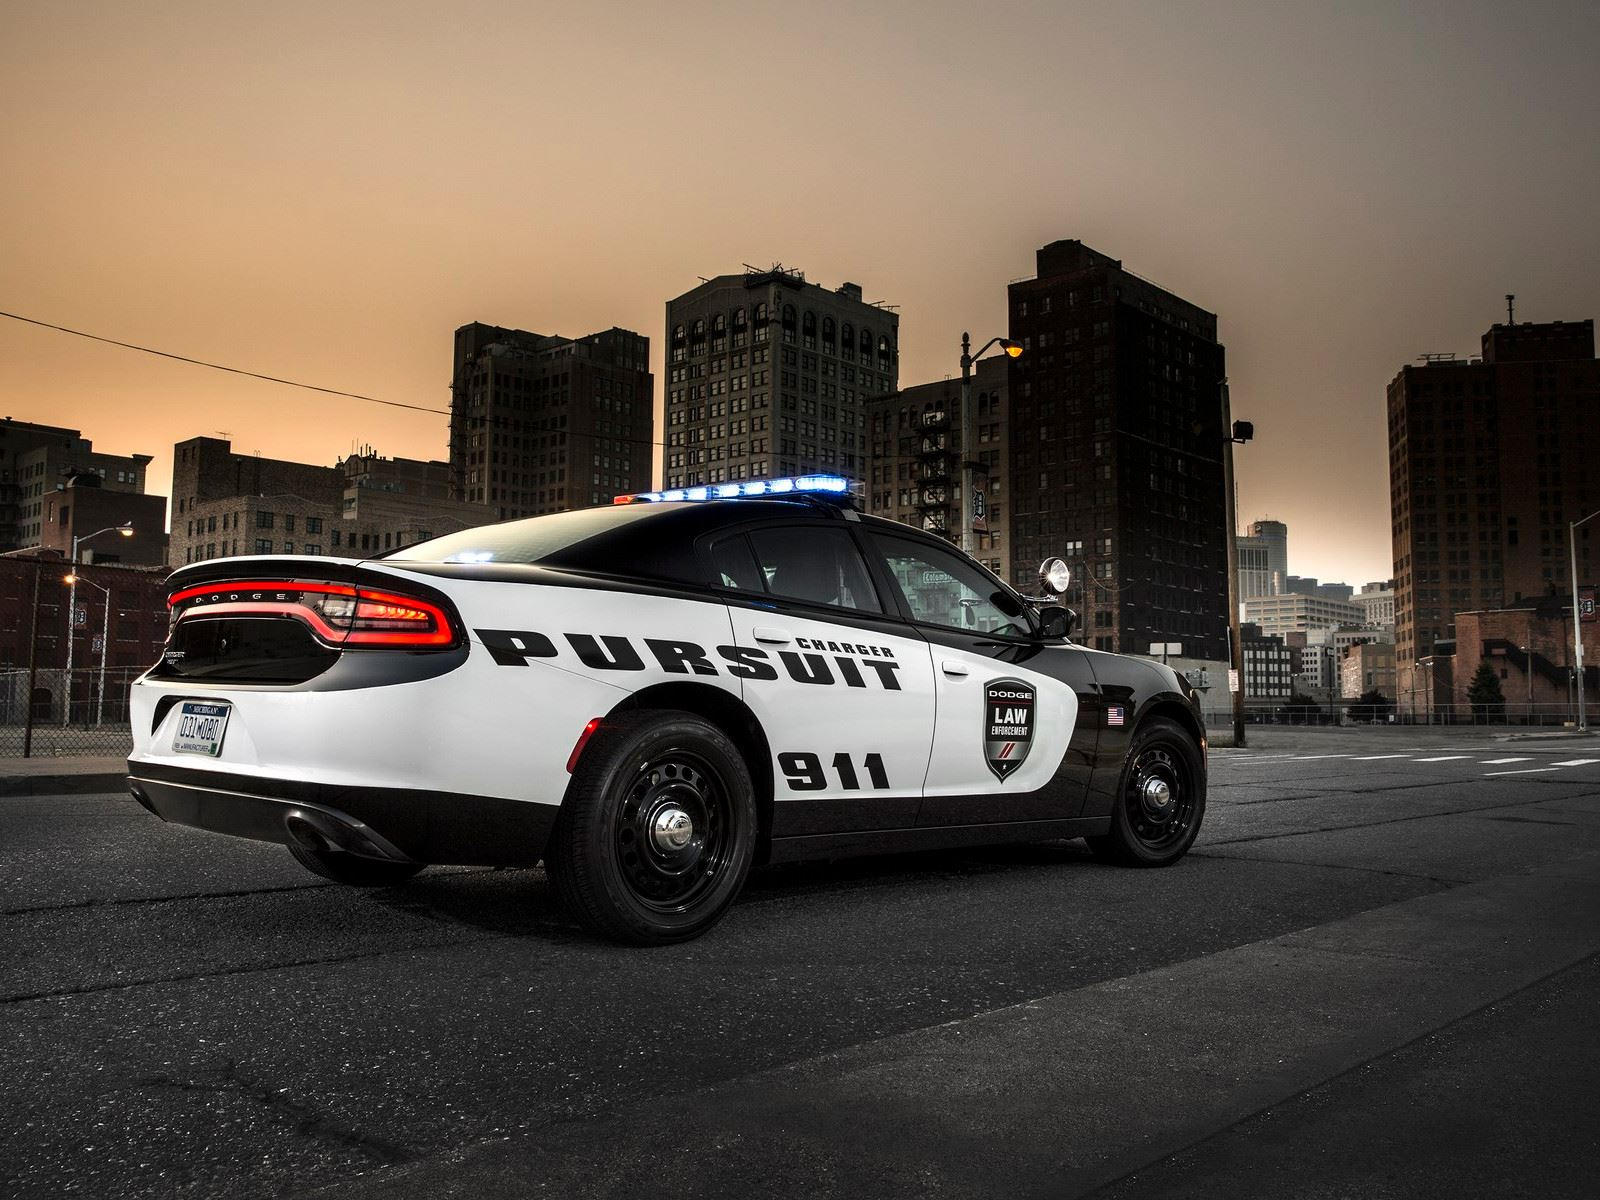 "بالصور" أكثر 10 سيارات شرطة تميزا حول العالم 57